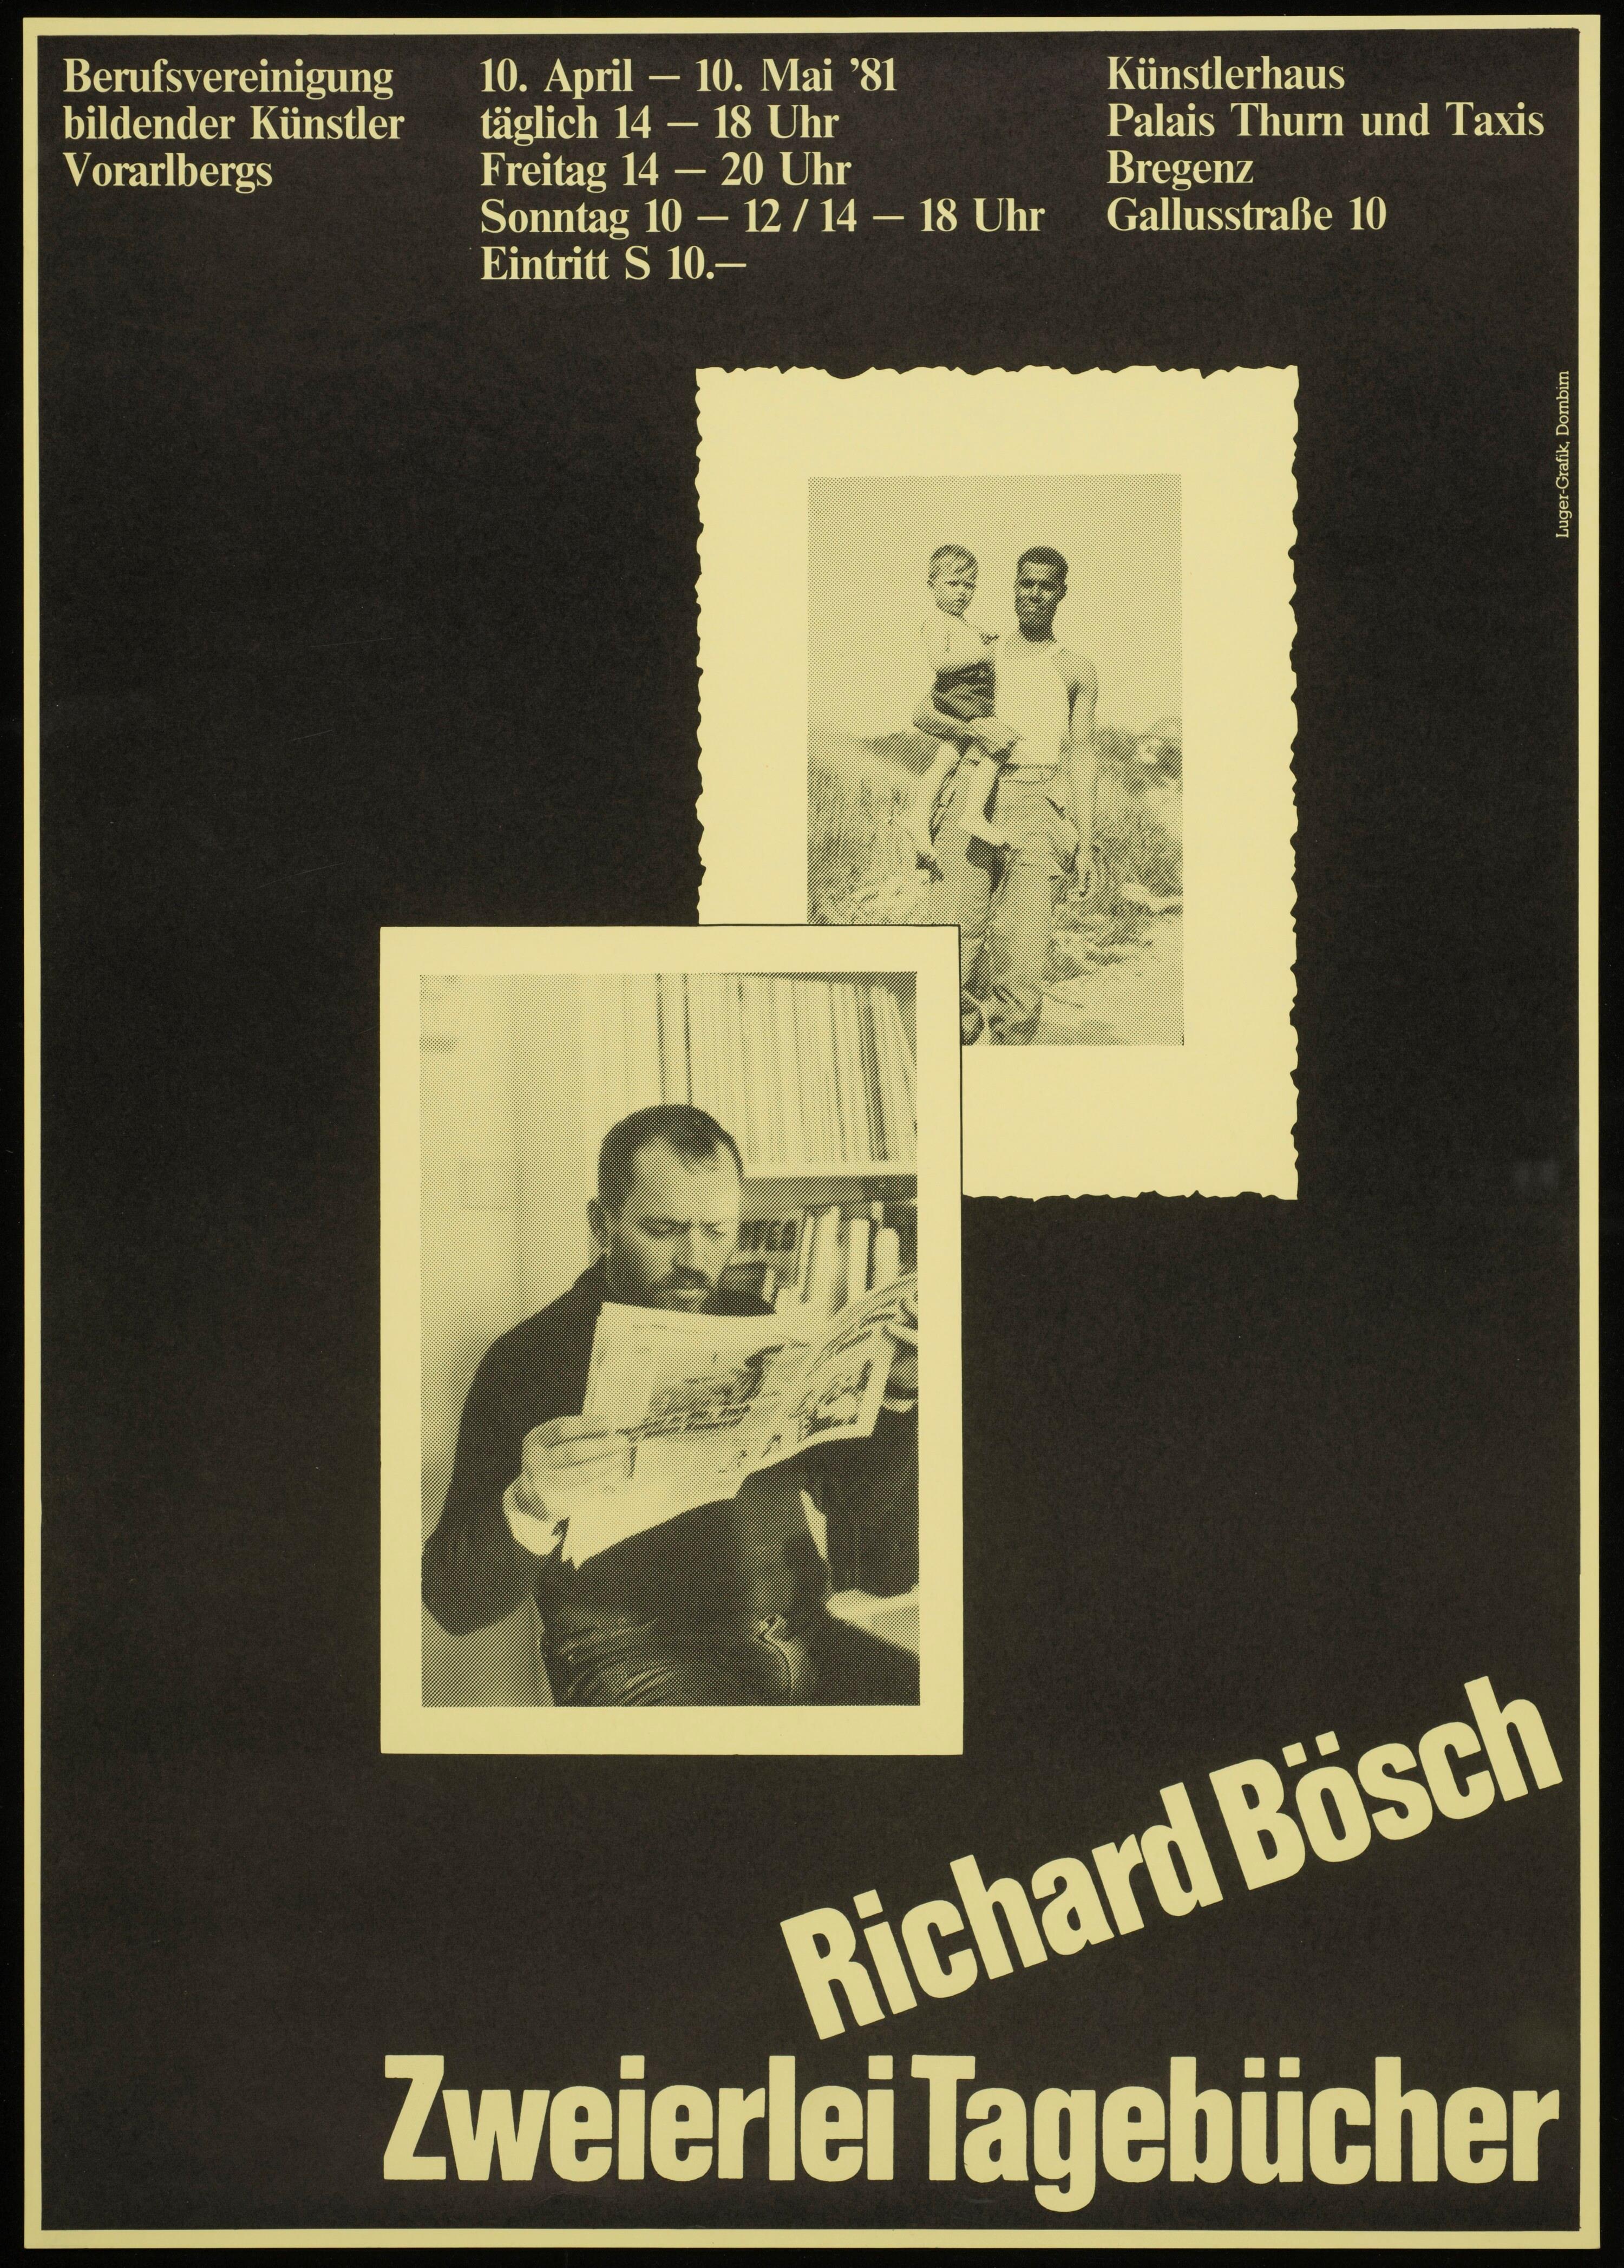 Richard Bösch></div>


    <hr>
    <div class=